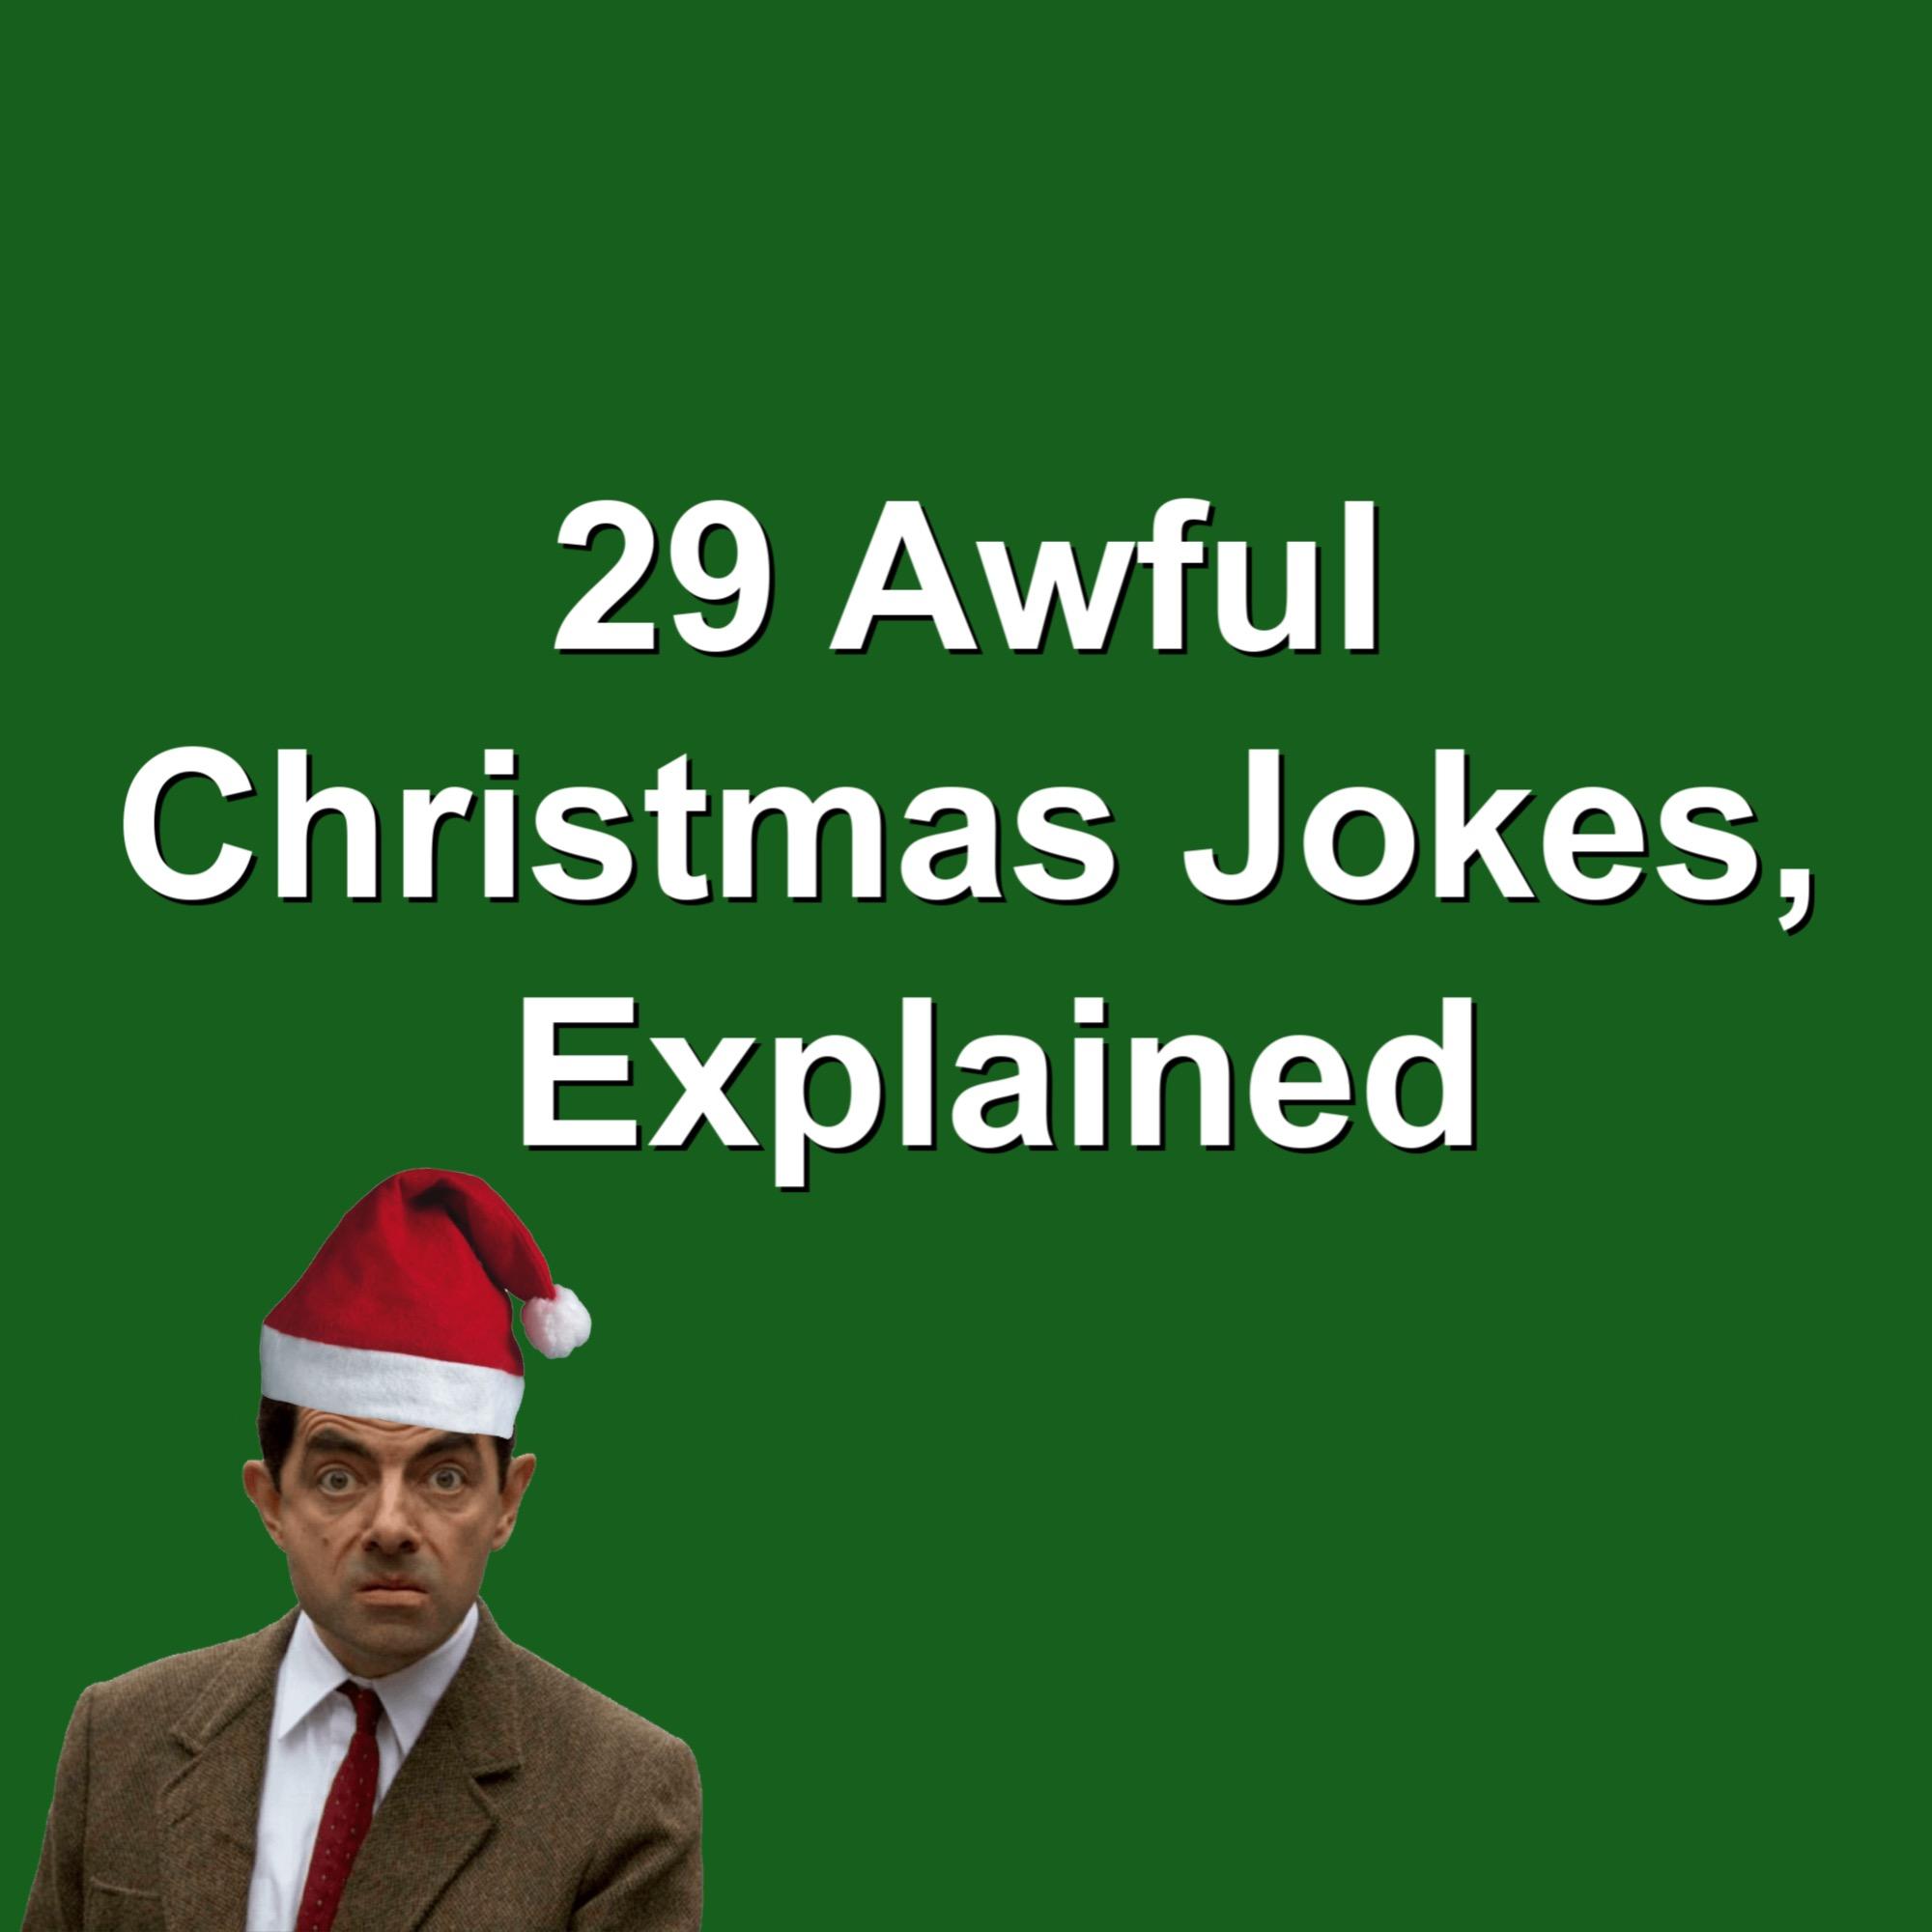 631. 29 Awful Christmas Jokes, Explained